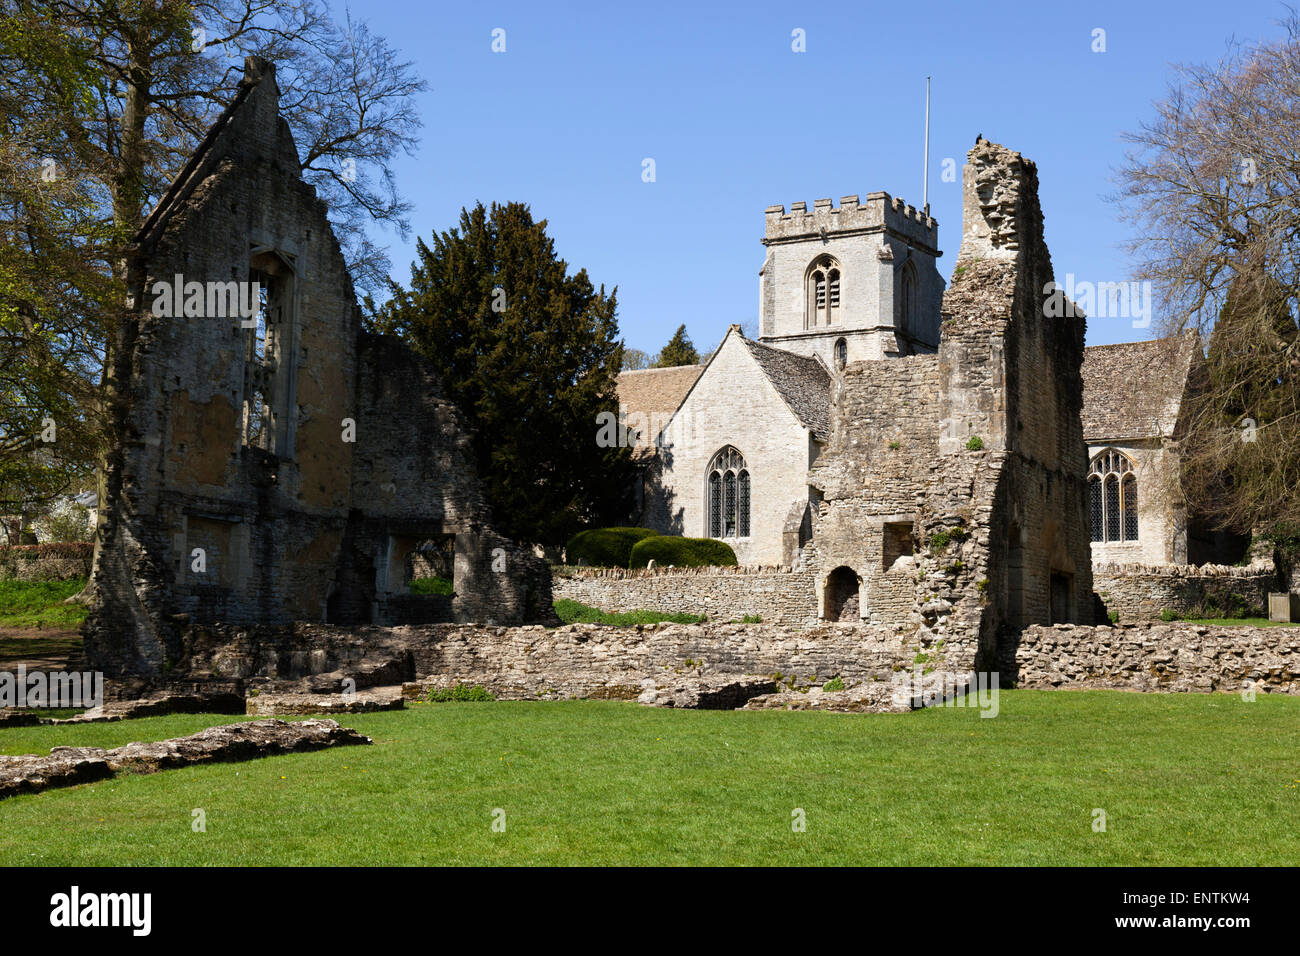 Ruines de Minster Lovell Hall (construit dans les 1440's), Minster Lovell, près de Witney, Cotswolds, Oxfordshire, Angleterre, Royaume-Uni Banque D'Images